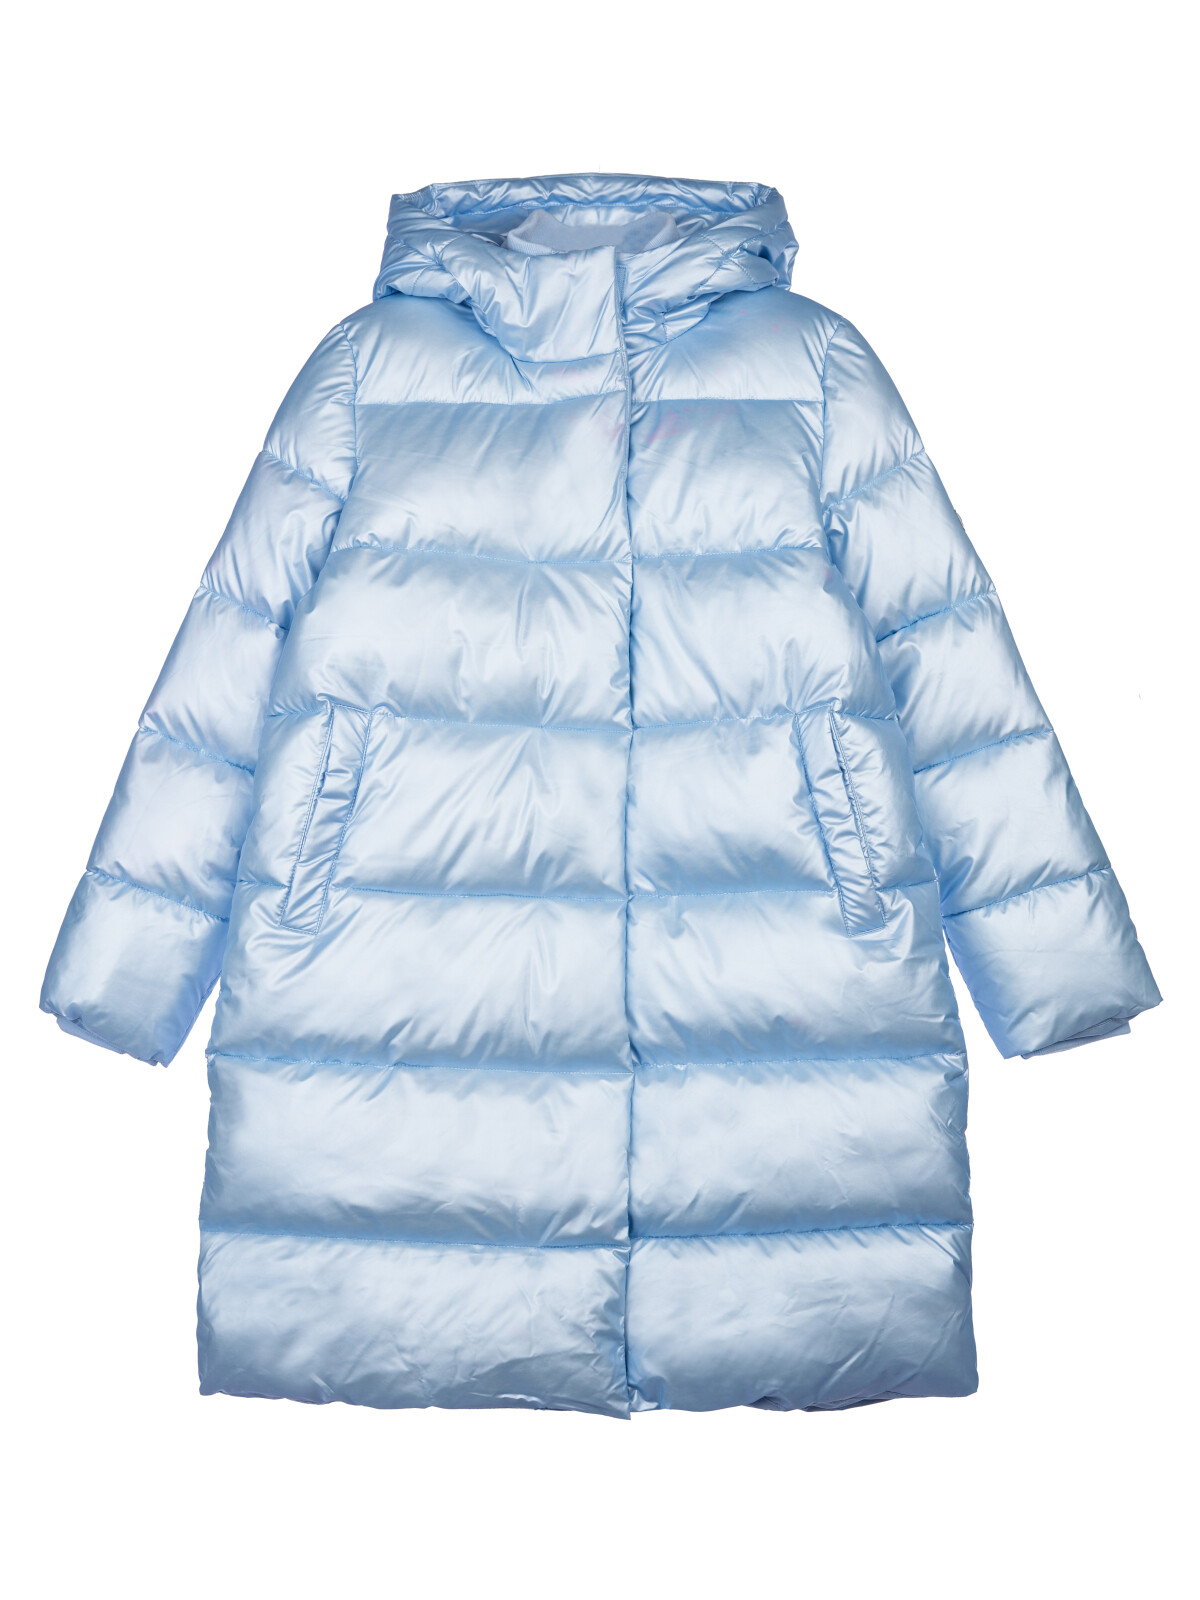 Пальто текстильное с полиуретановым покрытием для девочек PlayToday, голубой, 152